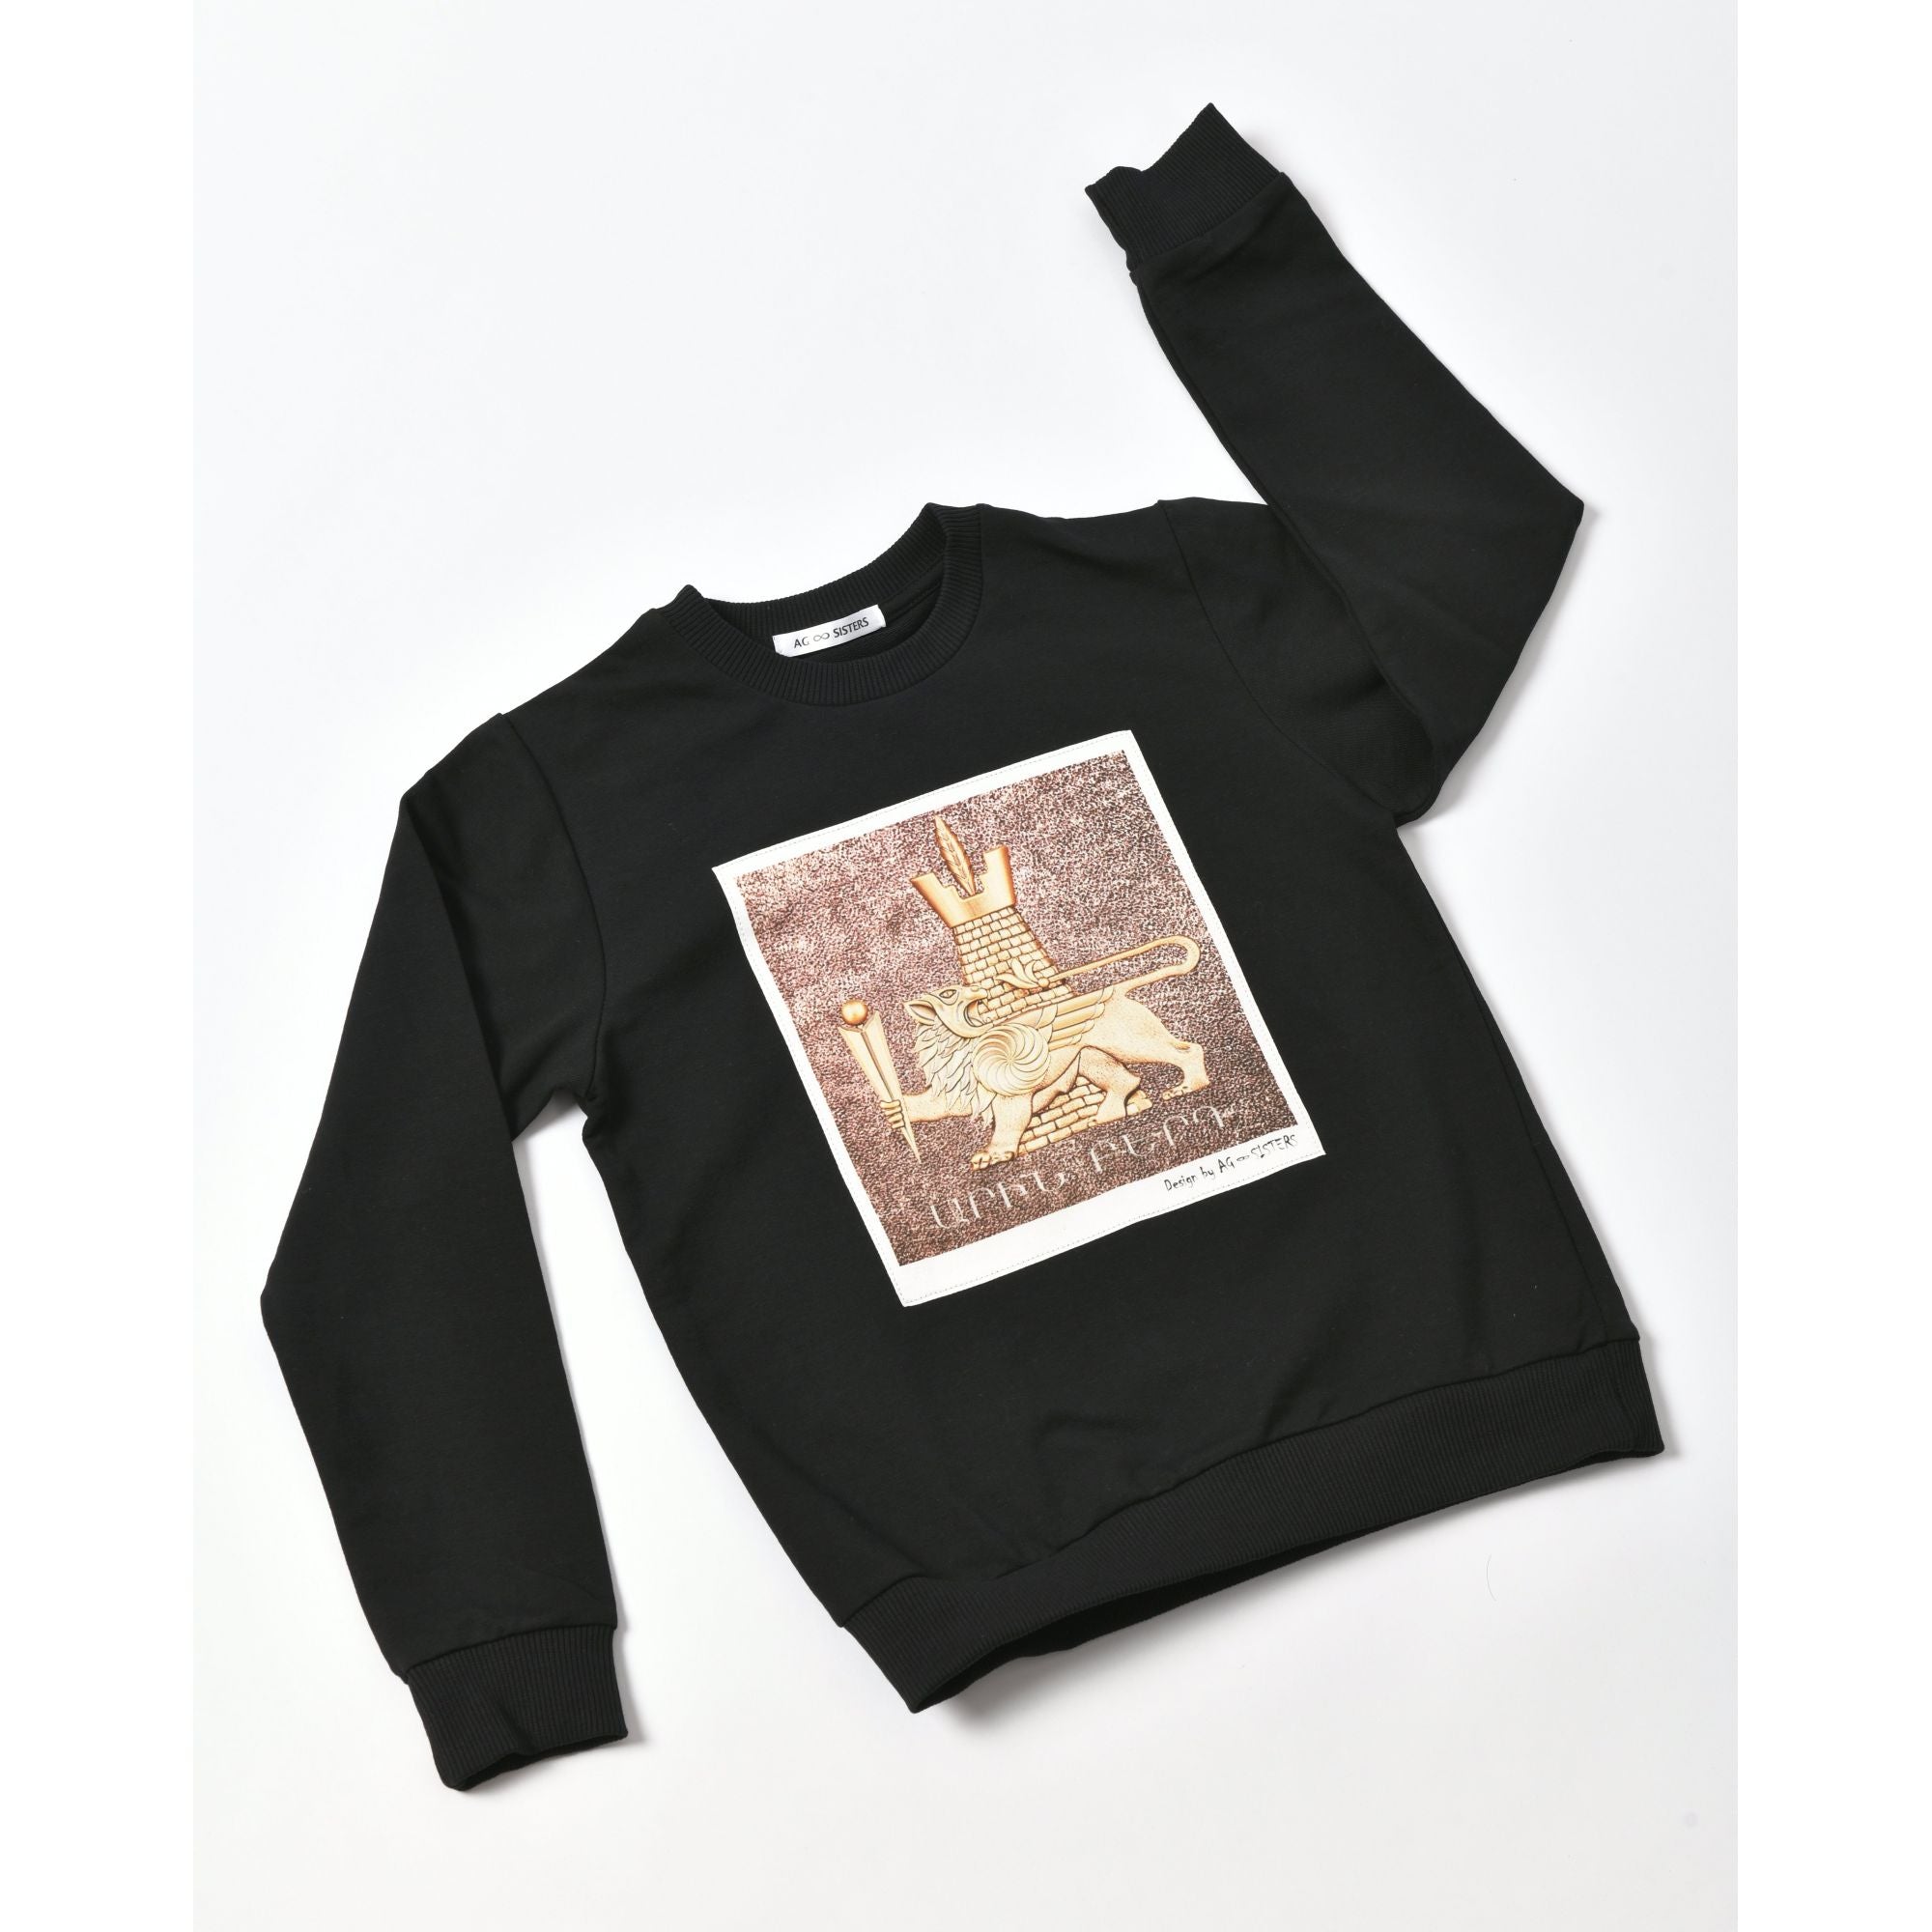 AG Sisters Kids' Sweatshirt with Silk Print "Arin-Berd"